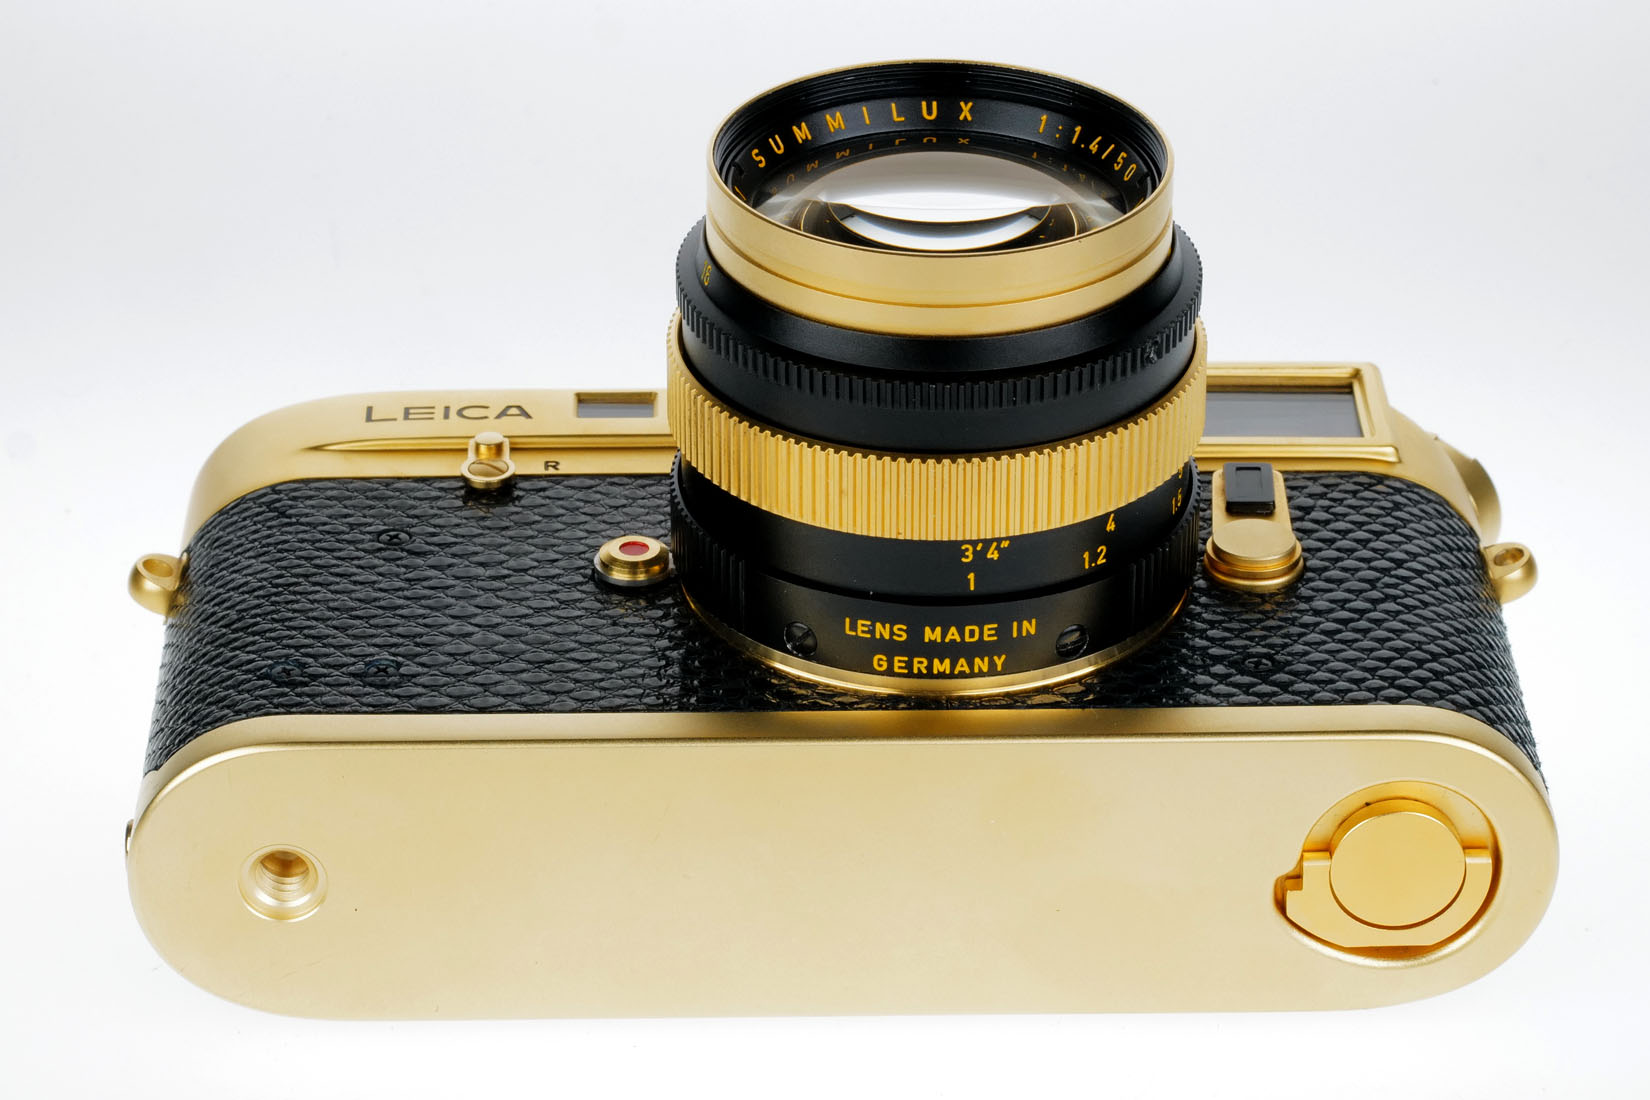 Leica M4-2 gold Oskar Barnack 10420